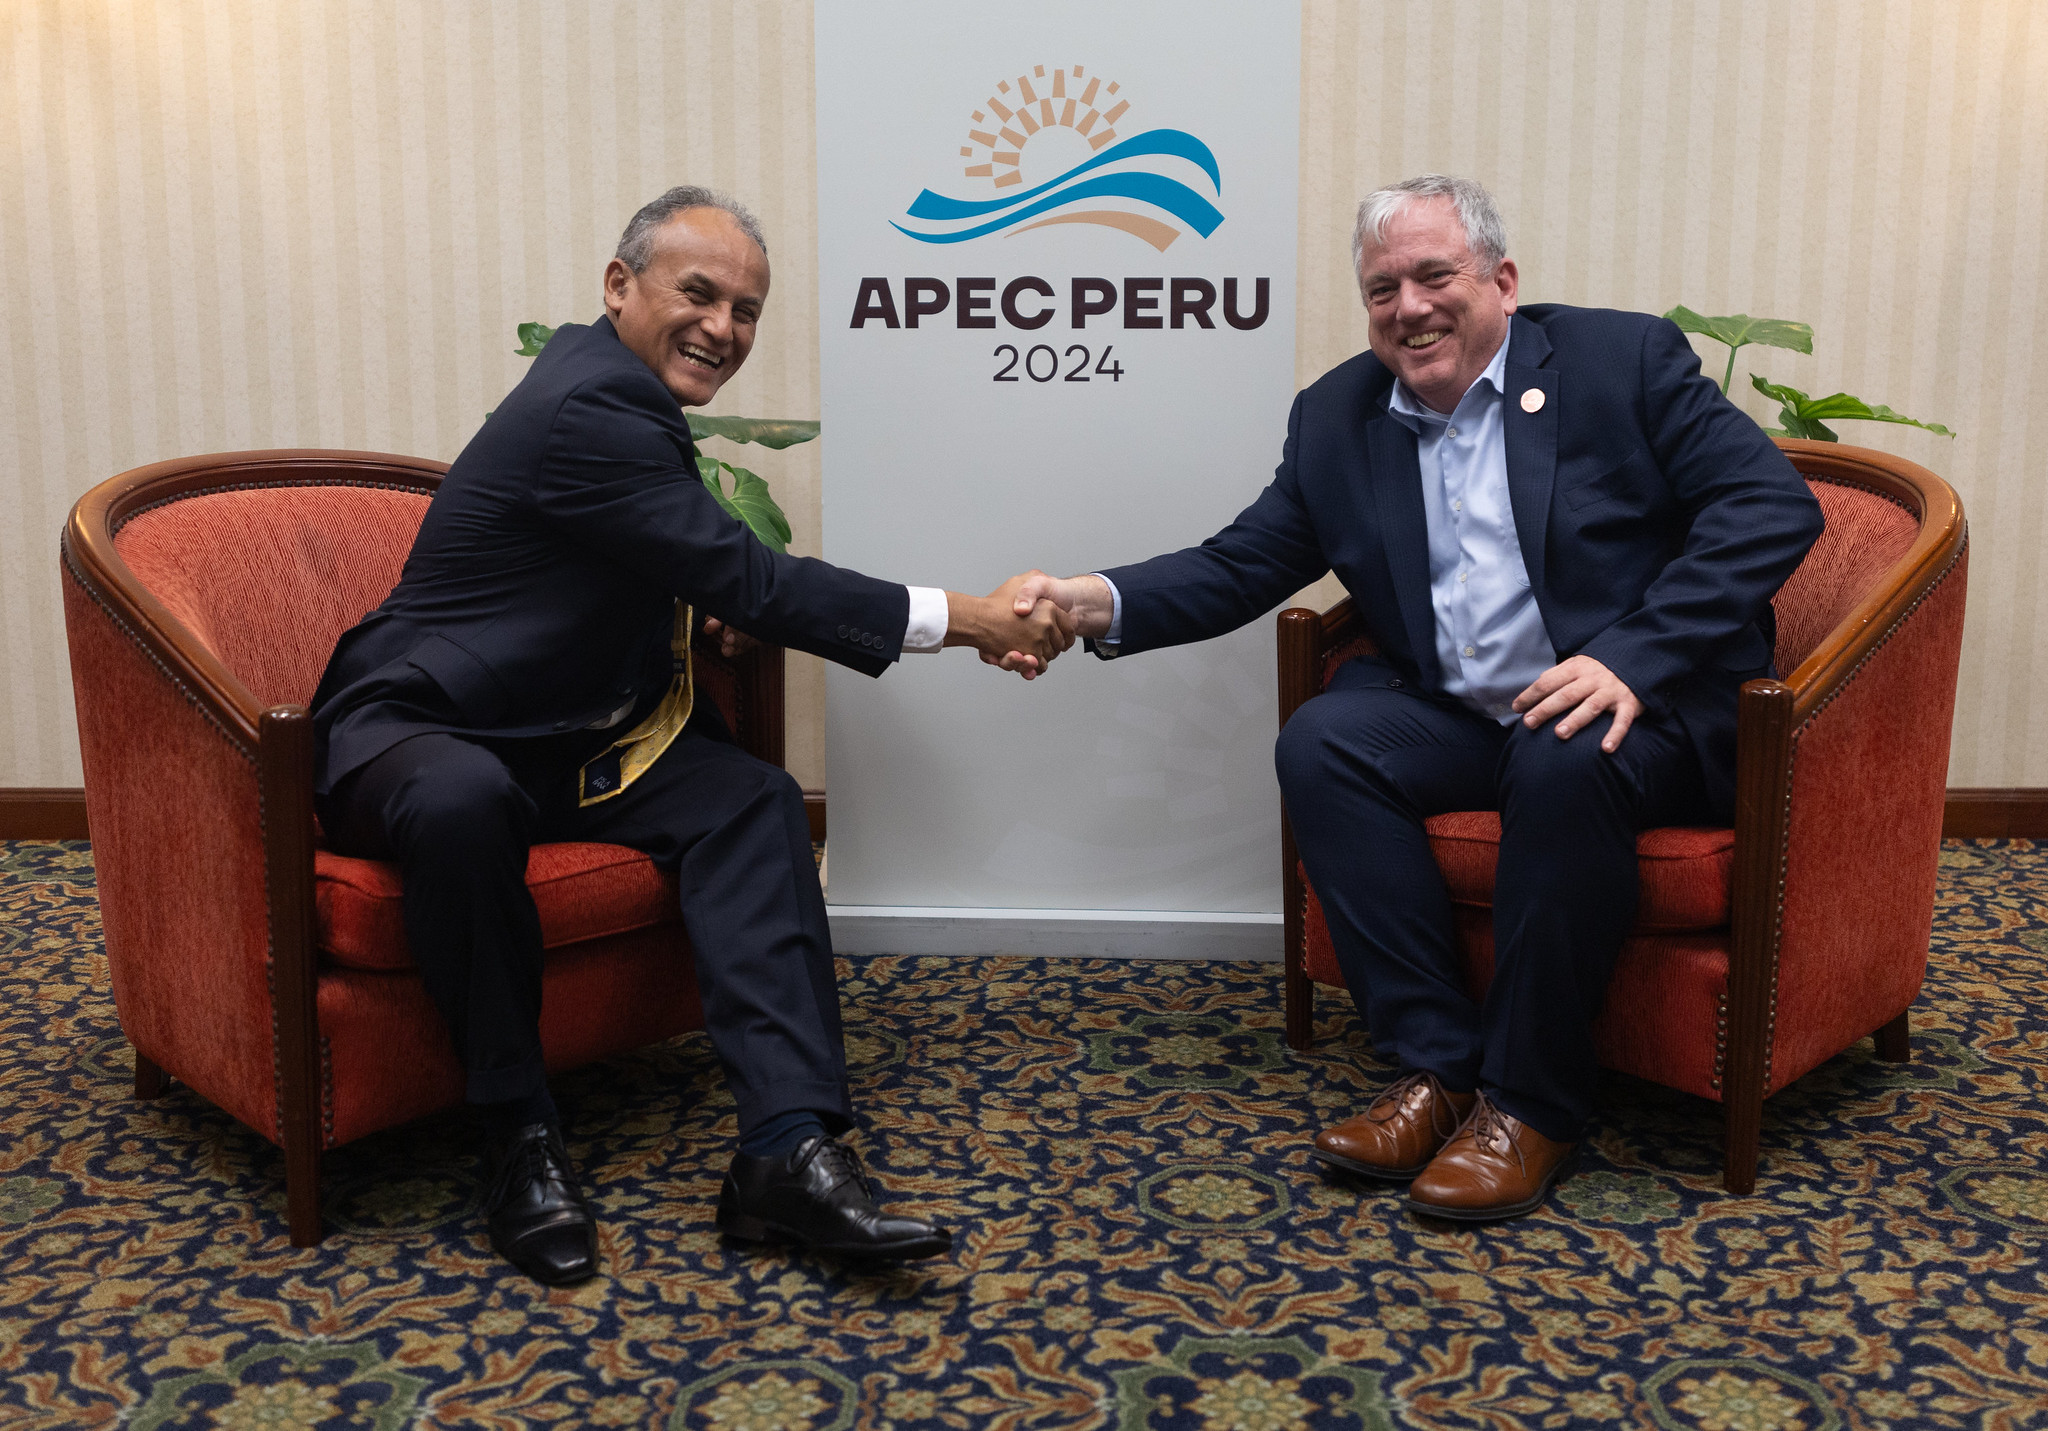 APEC Peru 2024 to emphasize transition to formal economy APEC Perú 2024